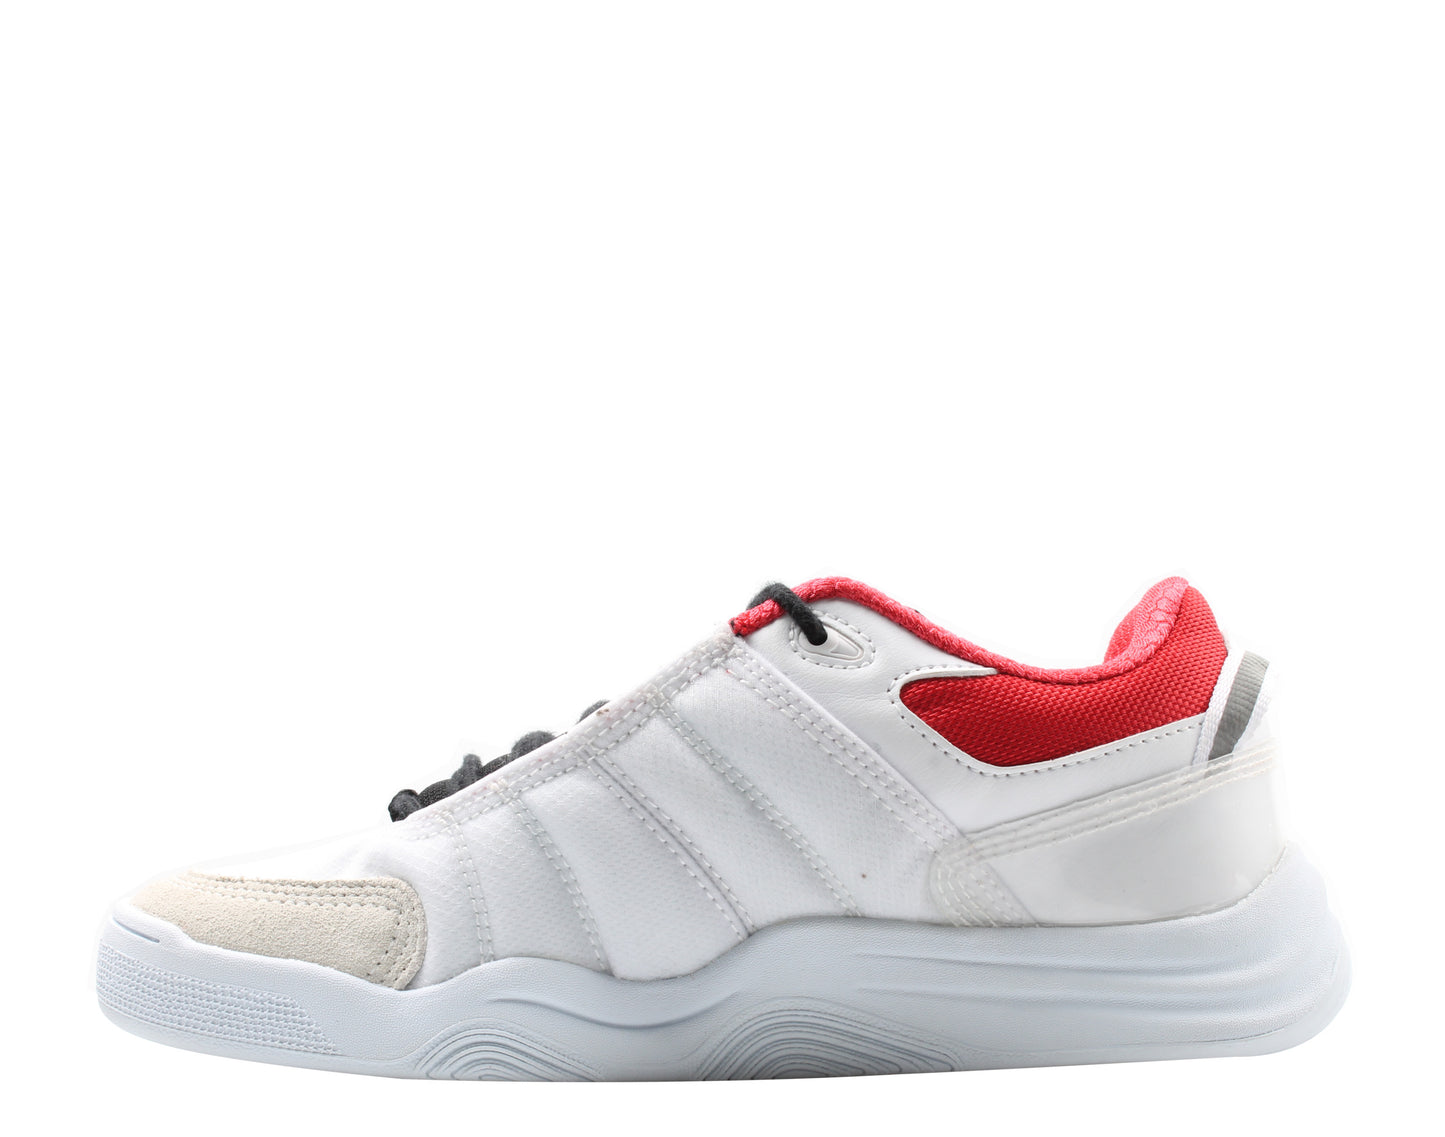 eS Footwear Evant White/Black/Red Men's Skateboard Sneakers 5101000171114